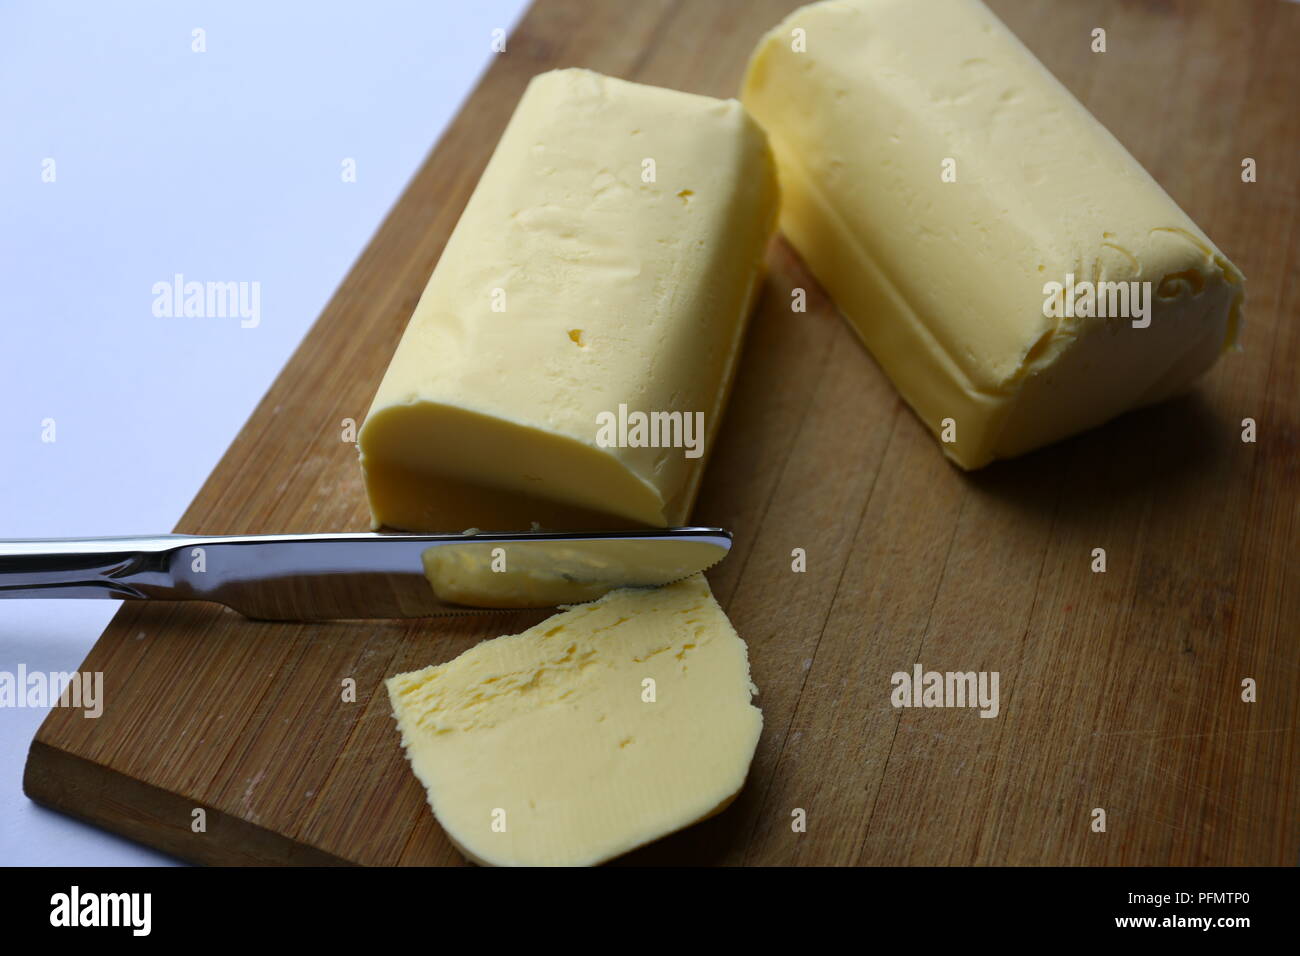 L'alimentation : du beurre frais Banque D'Images